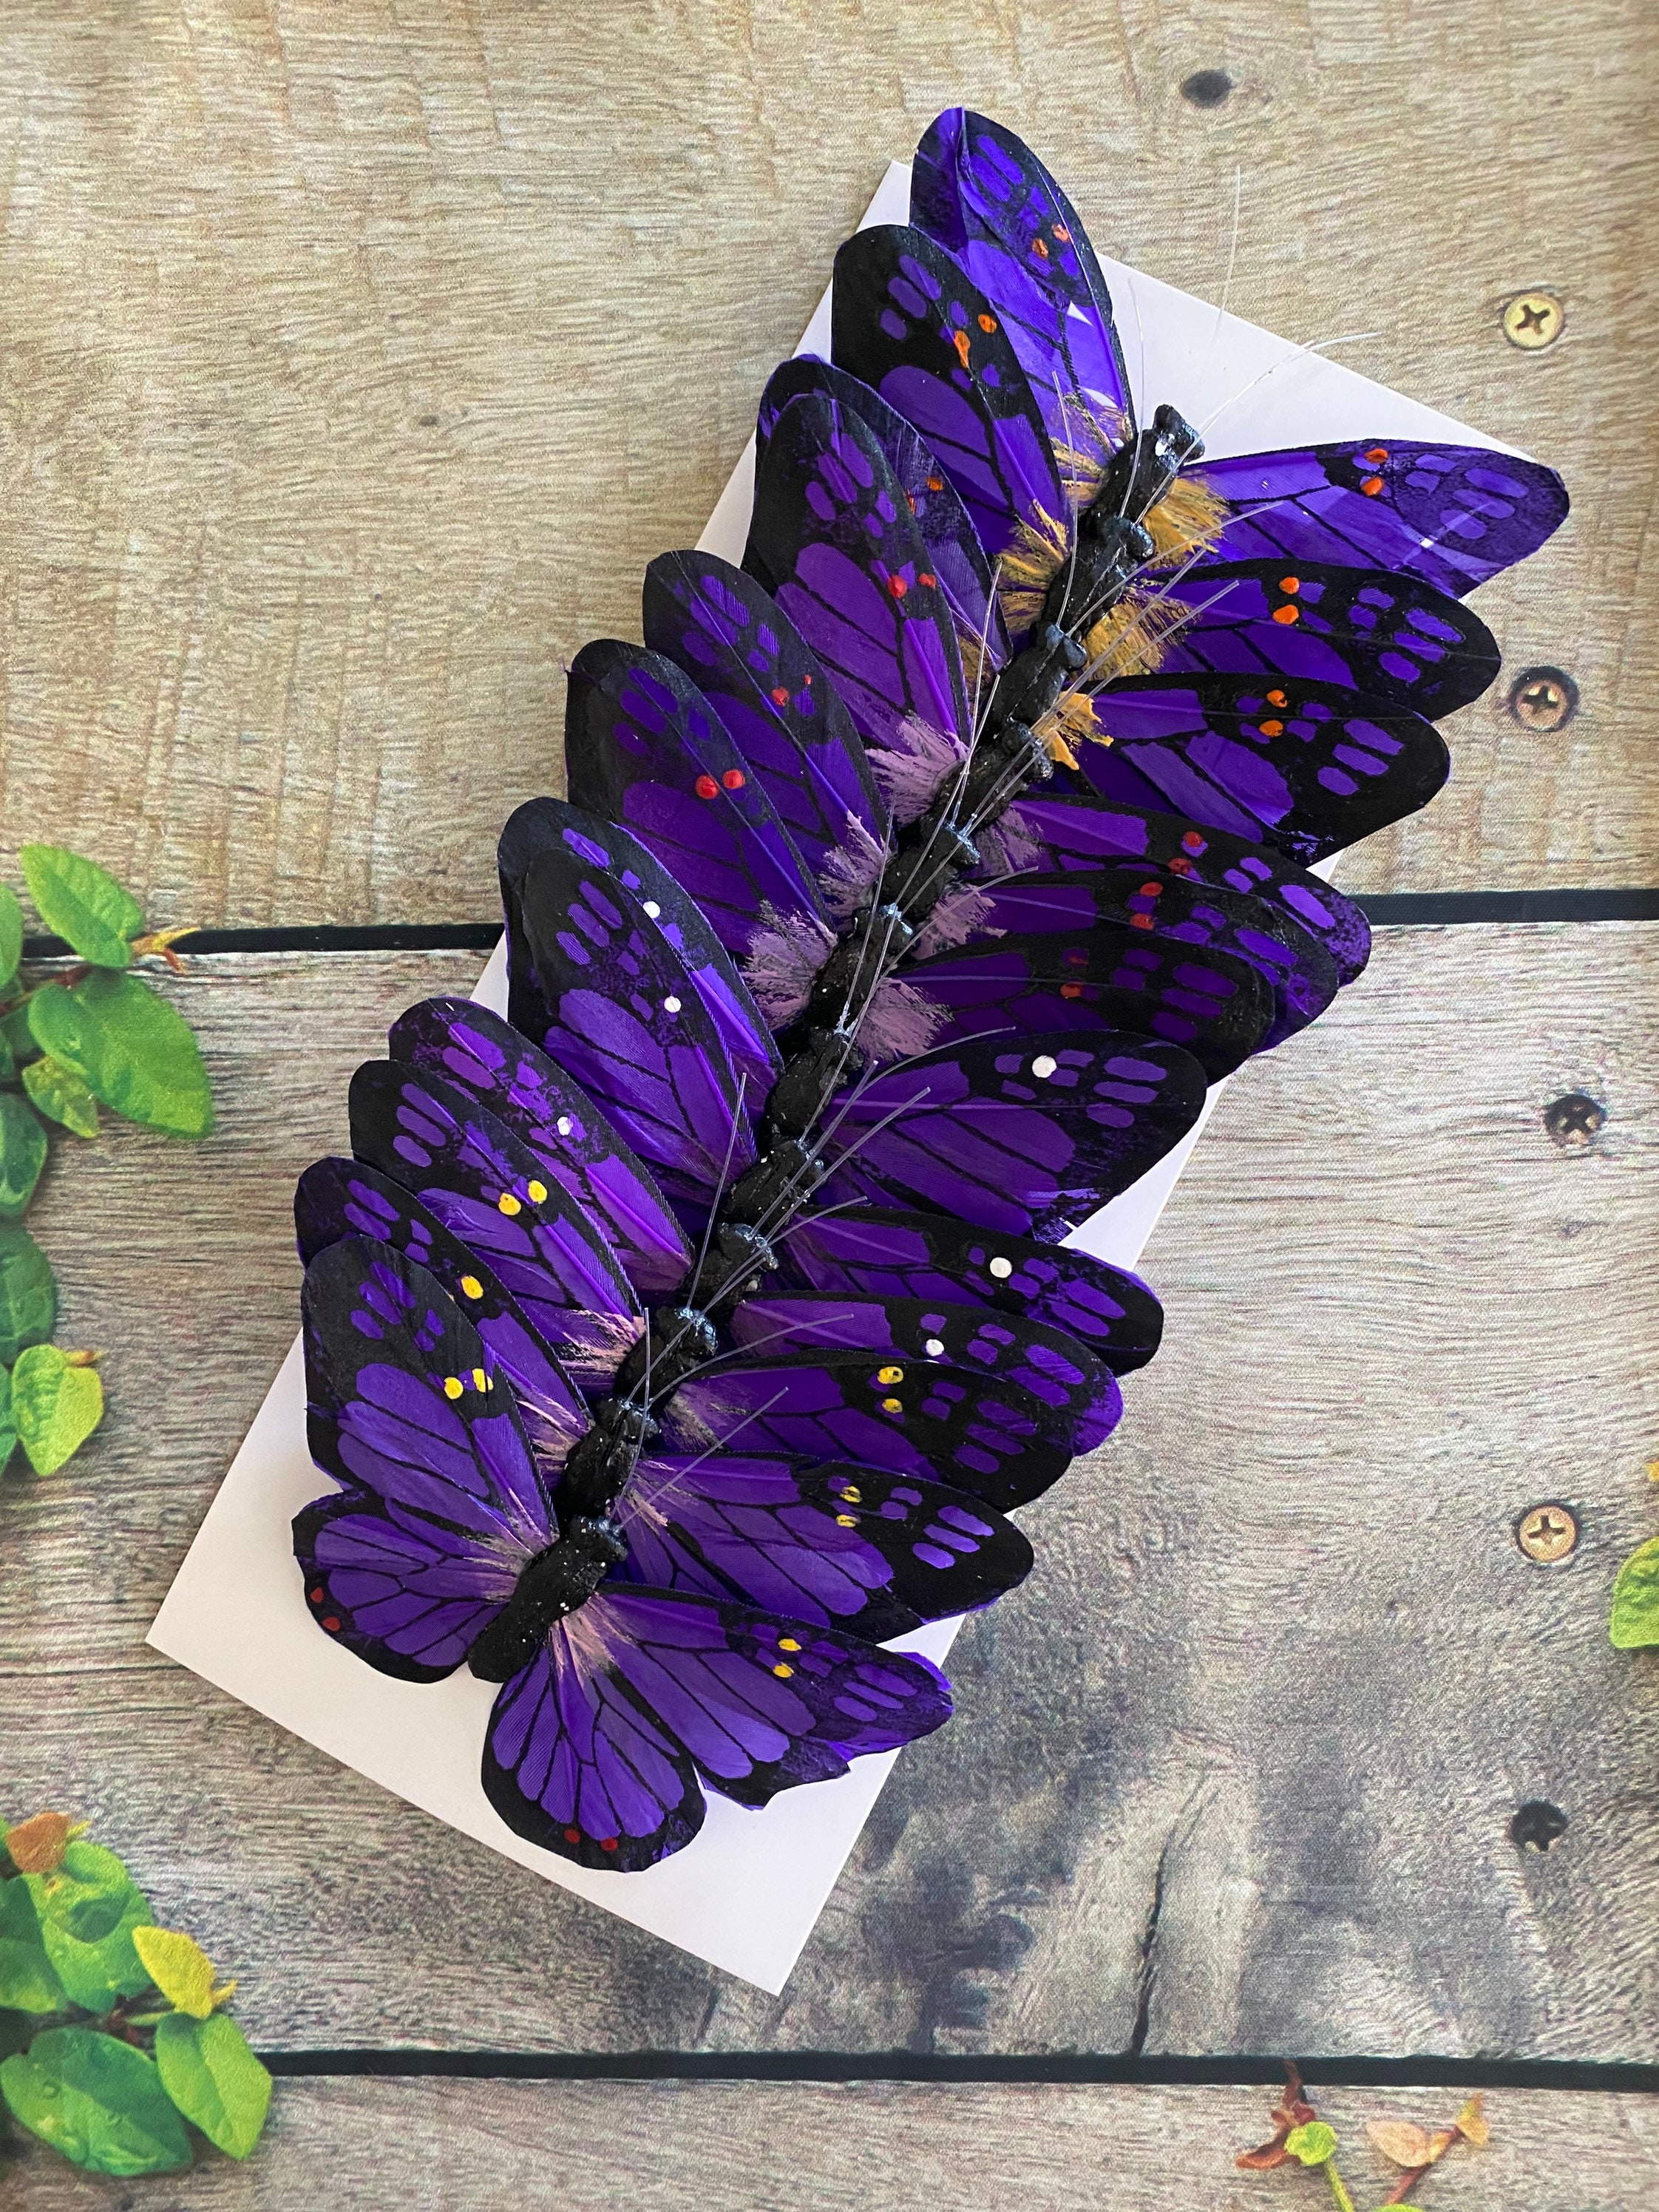 Juego de 12 mariposas de plumas monarca con purpurina en alambre para  arreglos florales y decoraciones de bricolaje (azul/dorado)